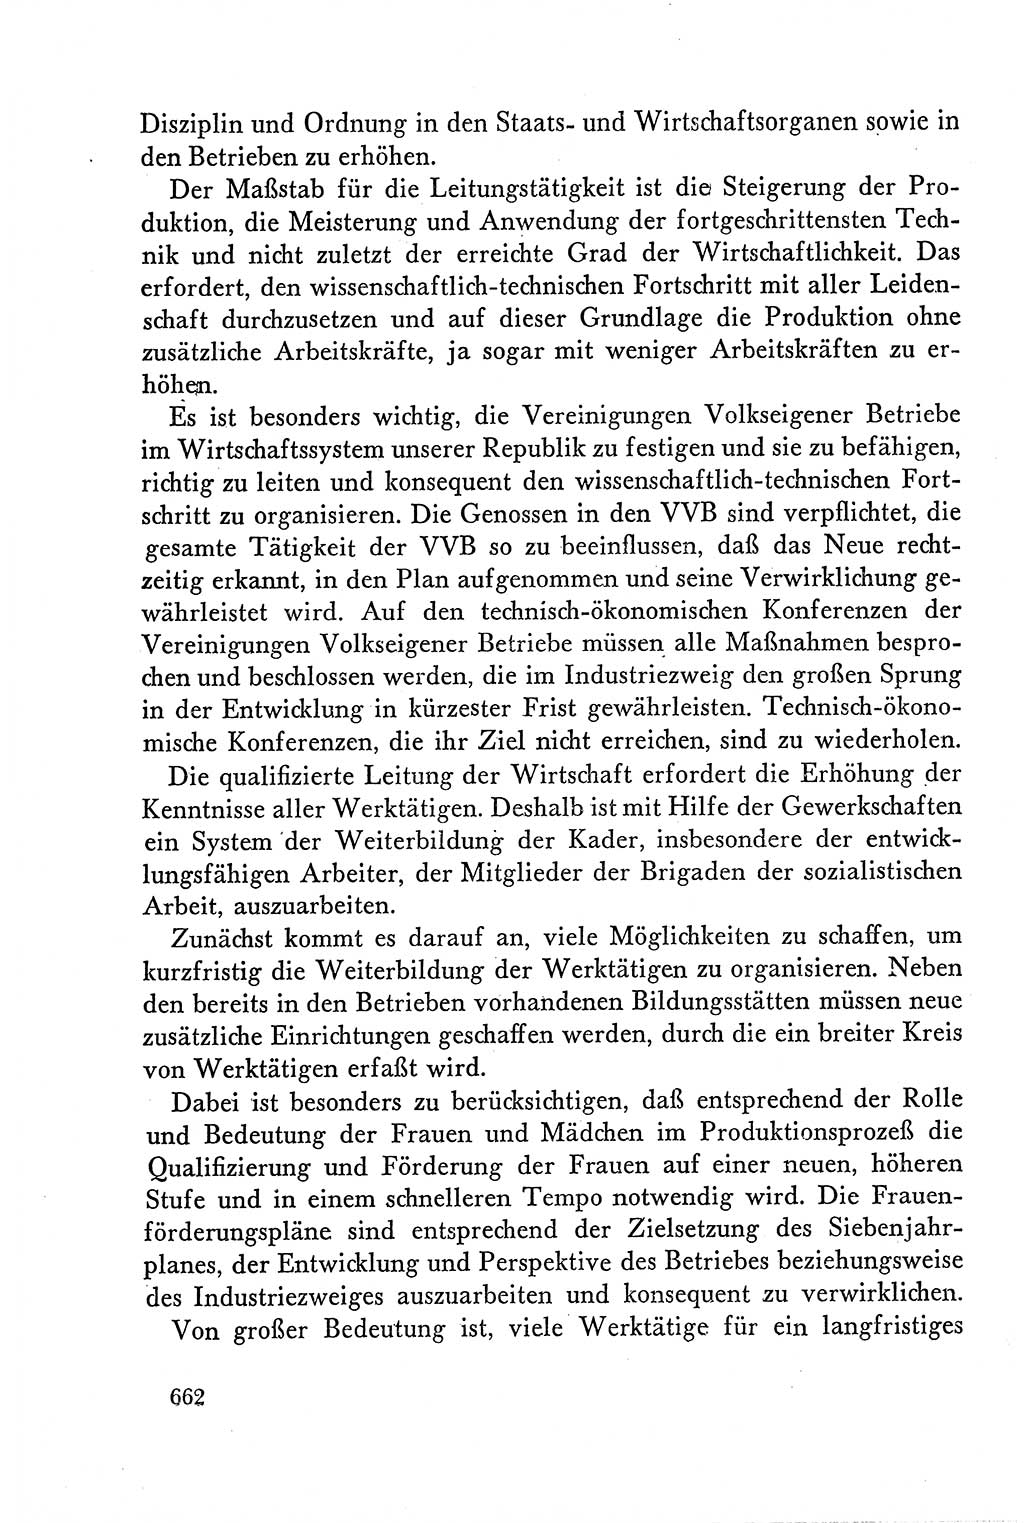 Dokumente der Sozialistischen Einheitspartei Deutschlands (SED) [Deutsche Demokratische Republik (DDR)] 1958-1959, Seite 662 (Dok. SED DDR 1958-1959, S. 662)